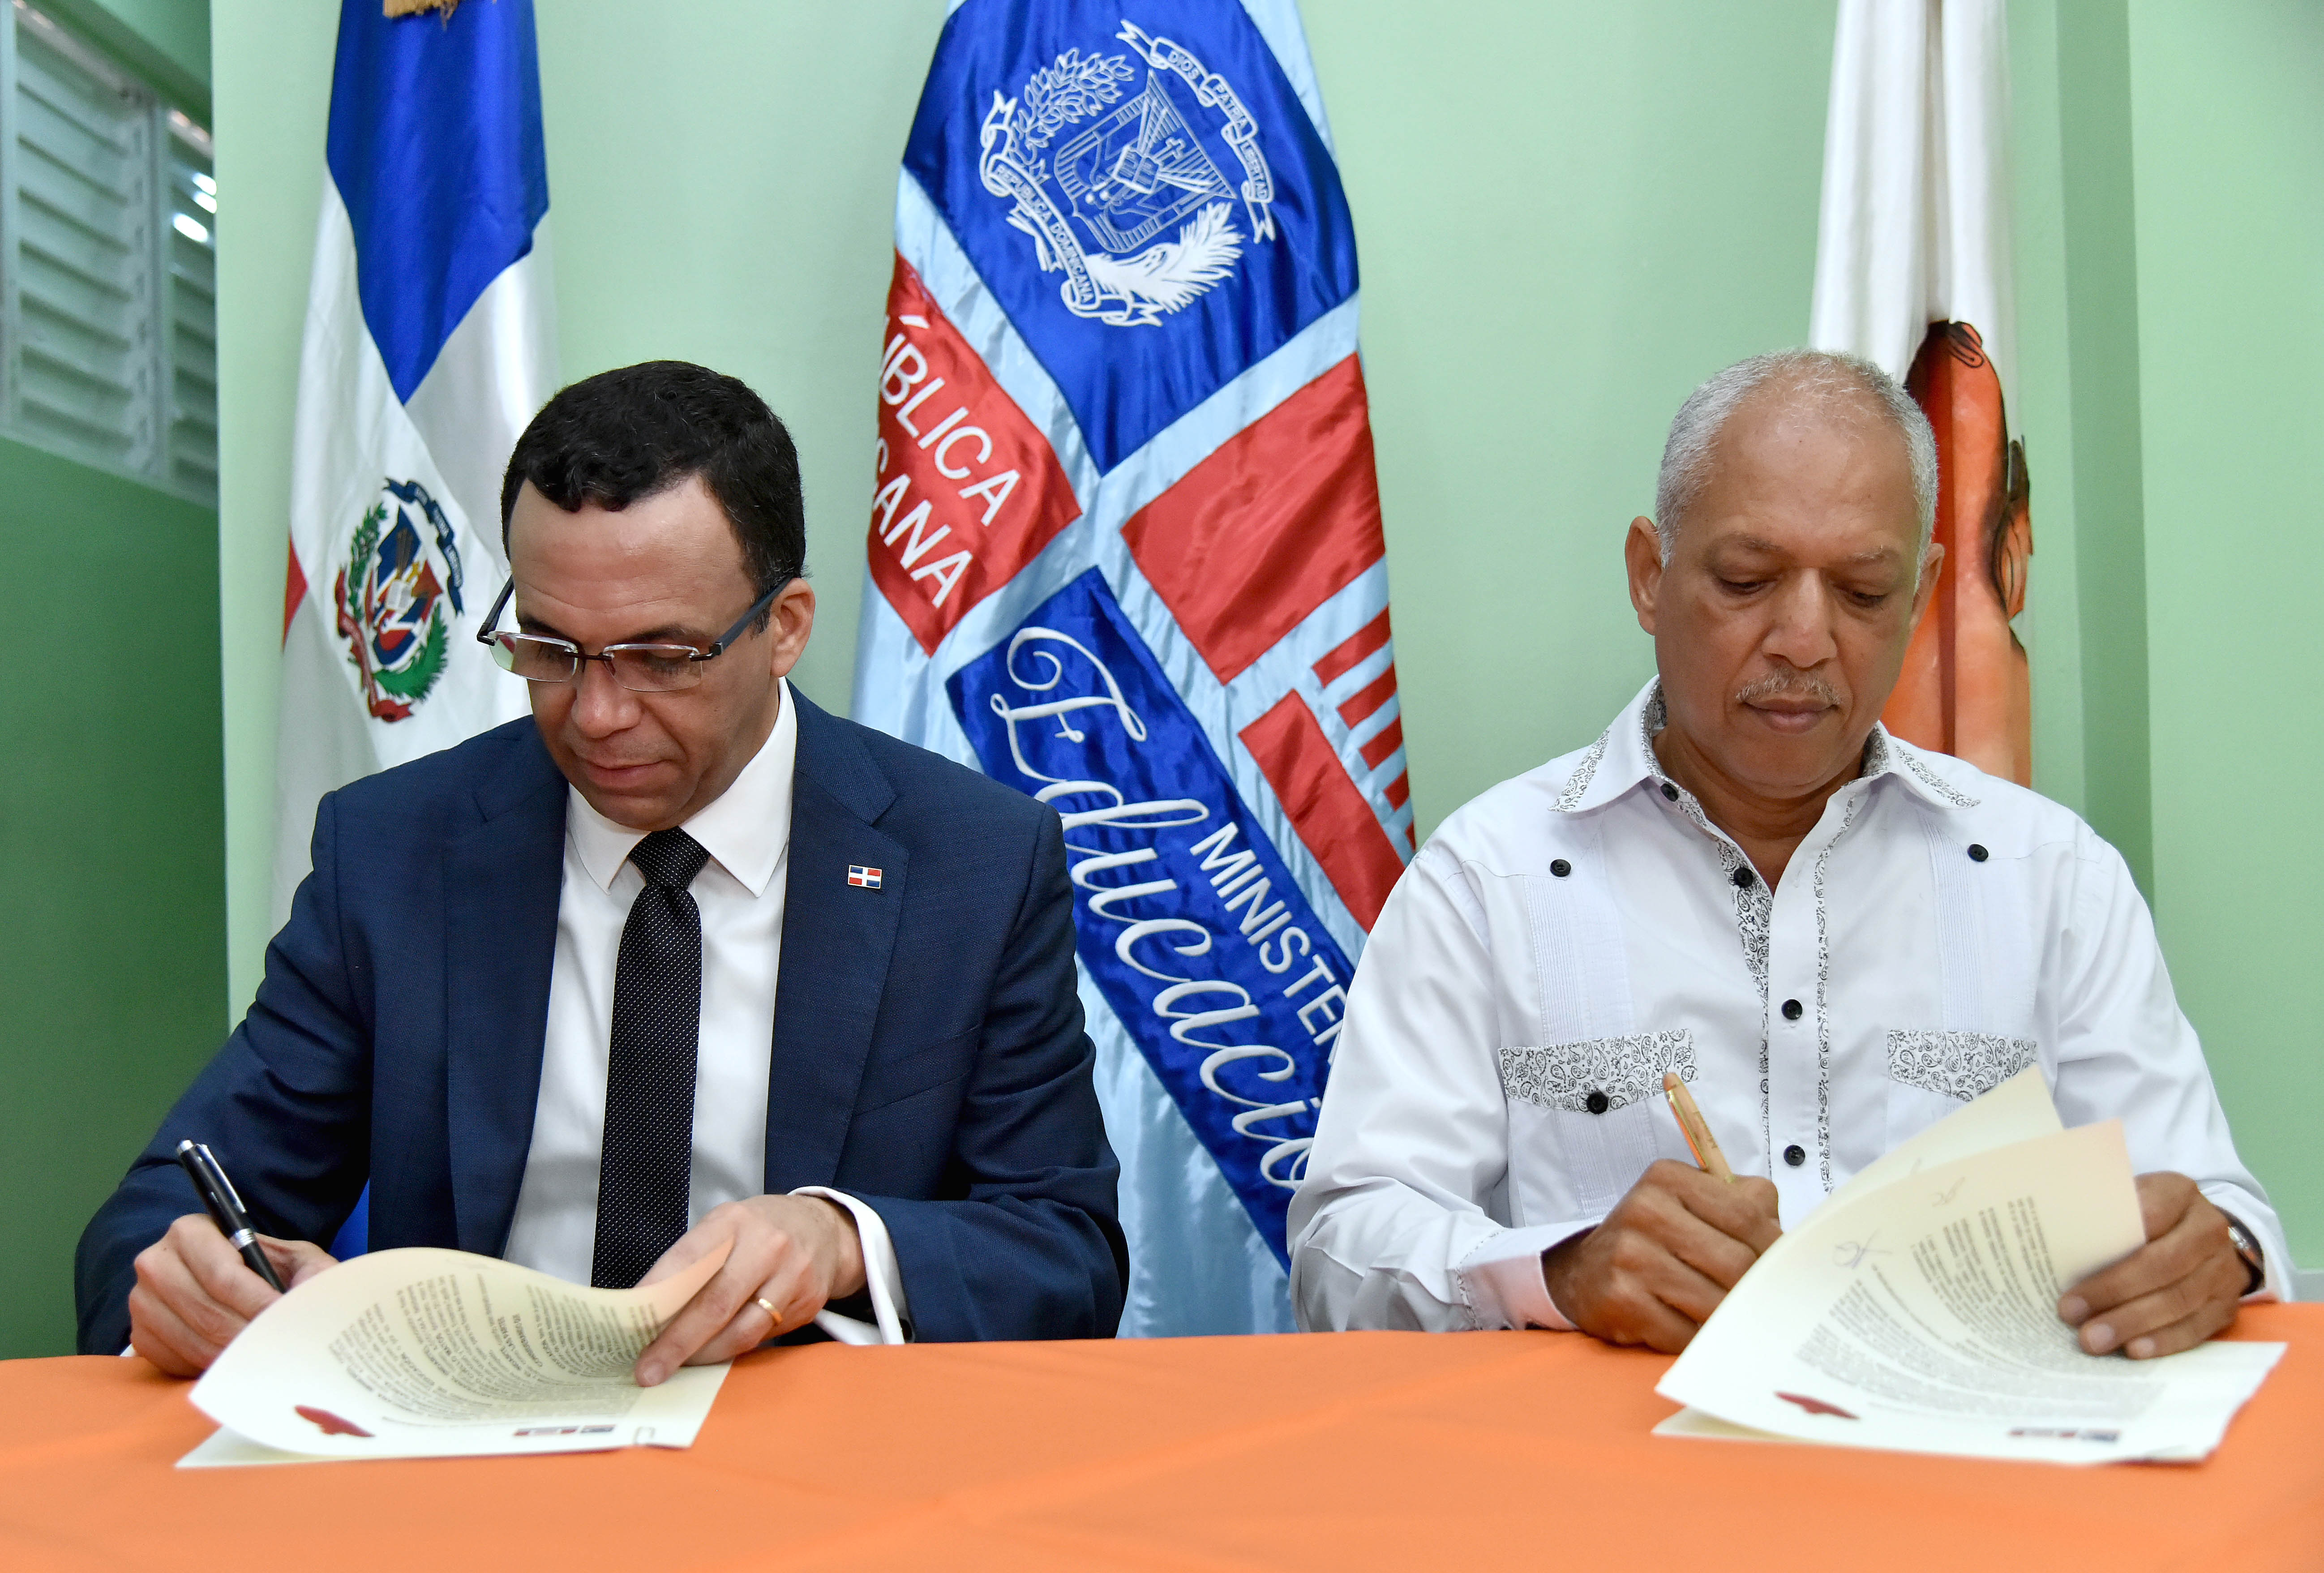  imagen Ministro Andrés Navarro y director de INDARTE  sentados firmando acuerdo de cooperación para promover el arte en las escuelas de Capotillo  